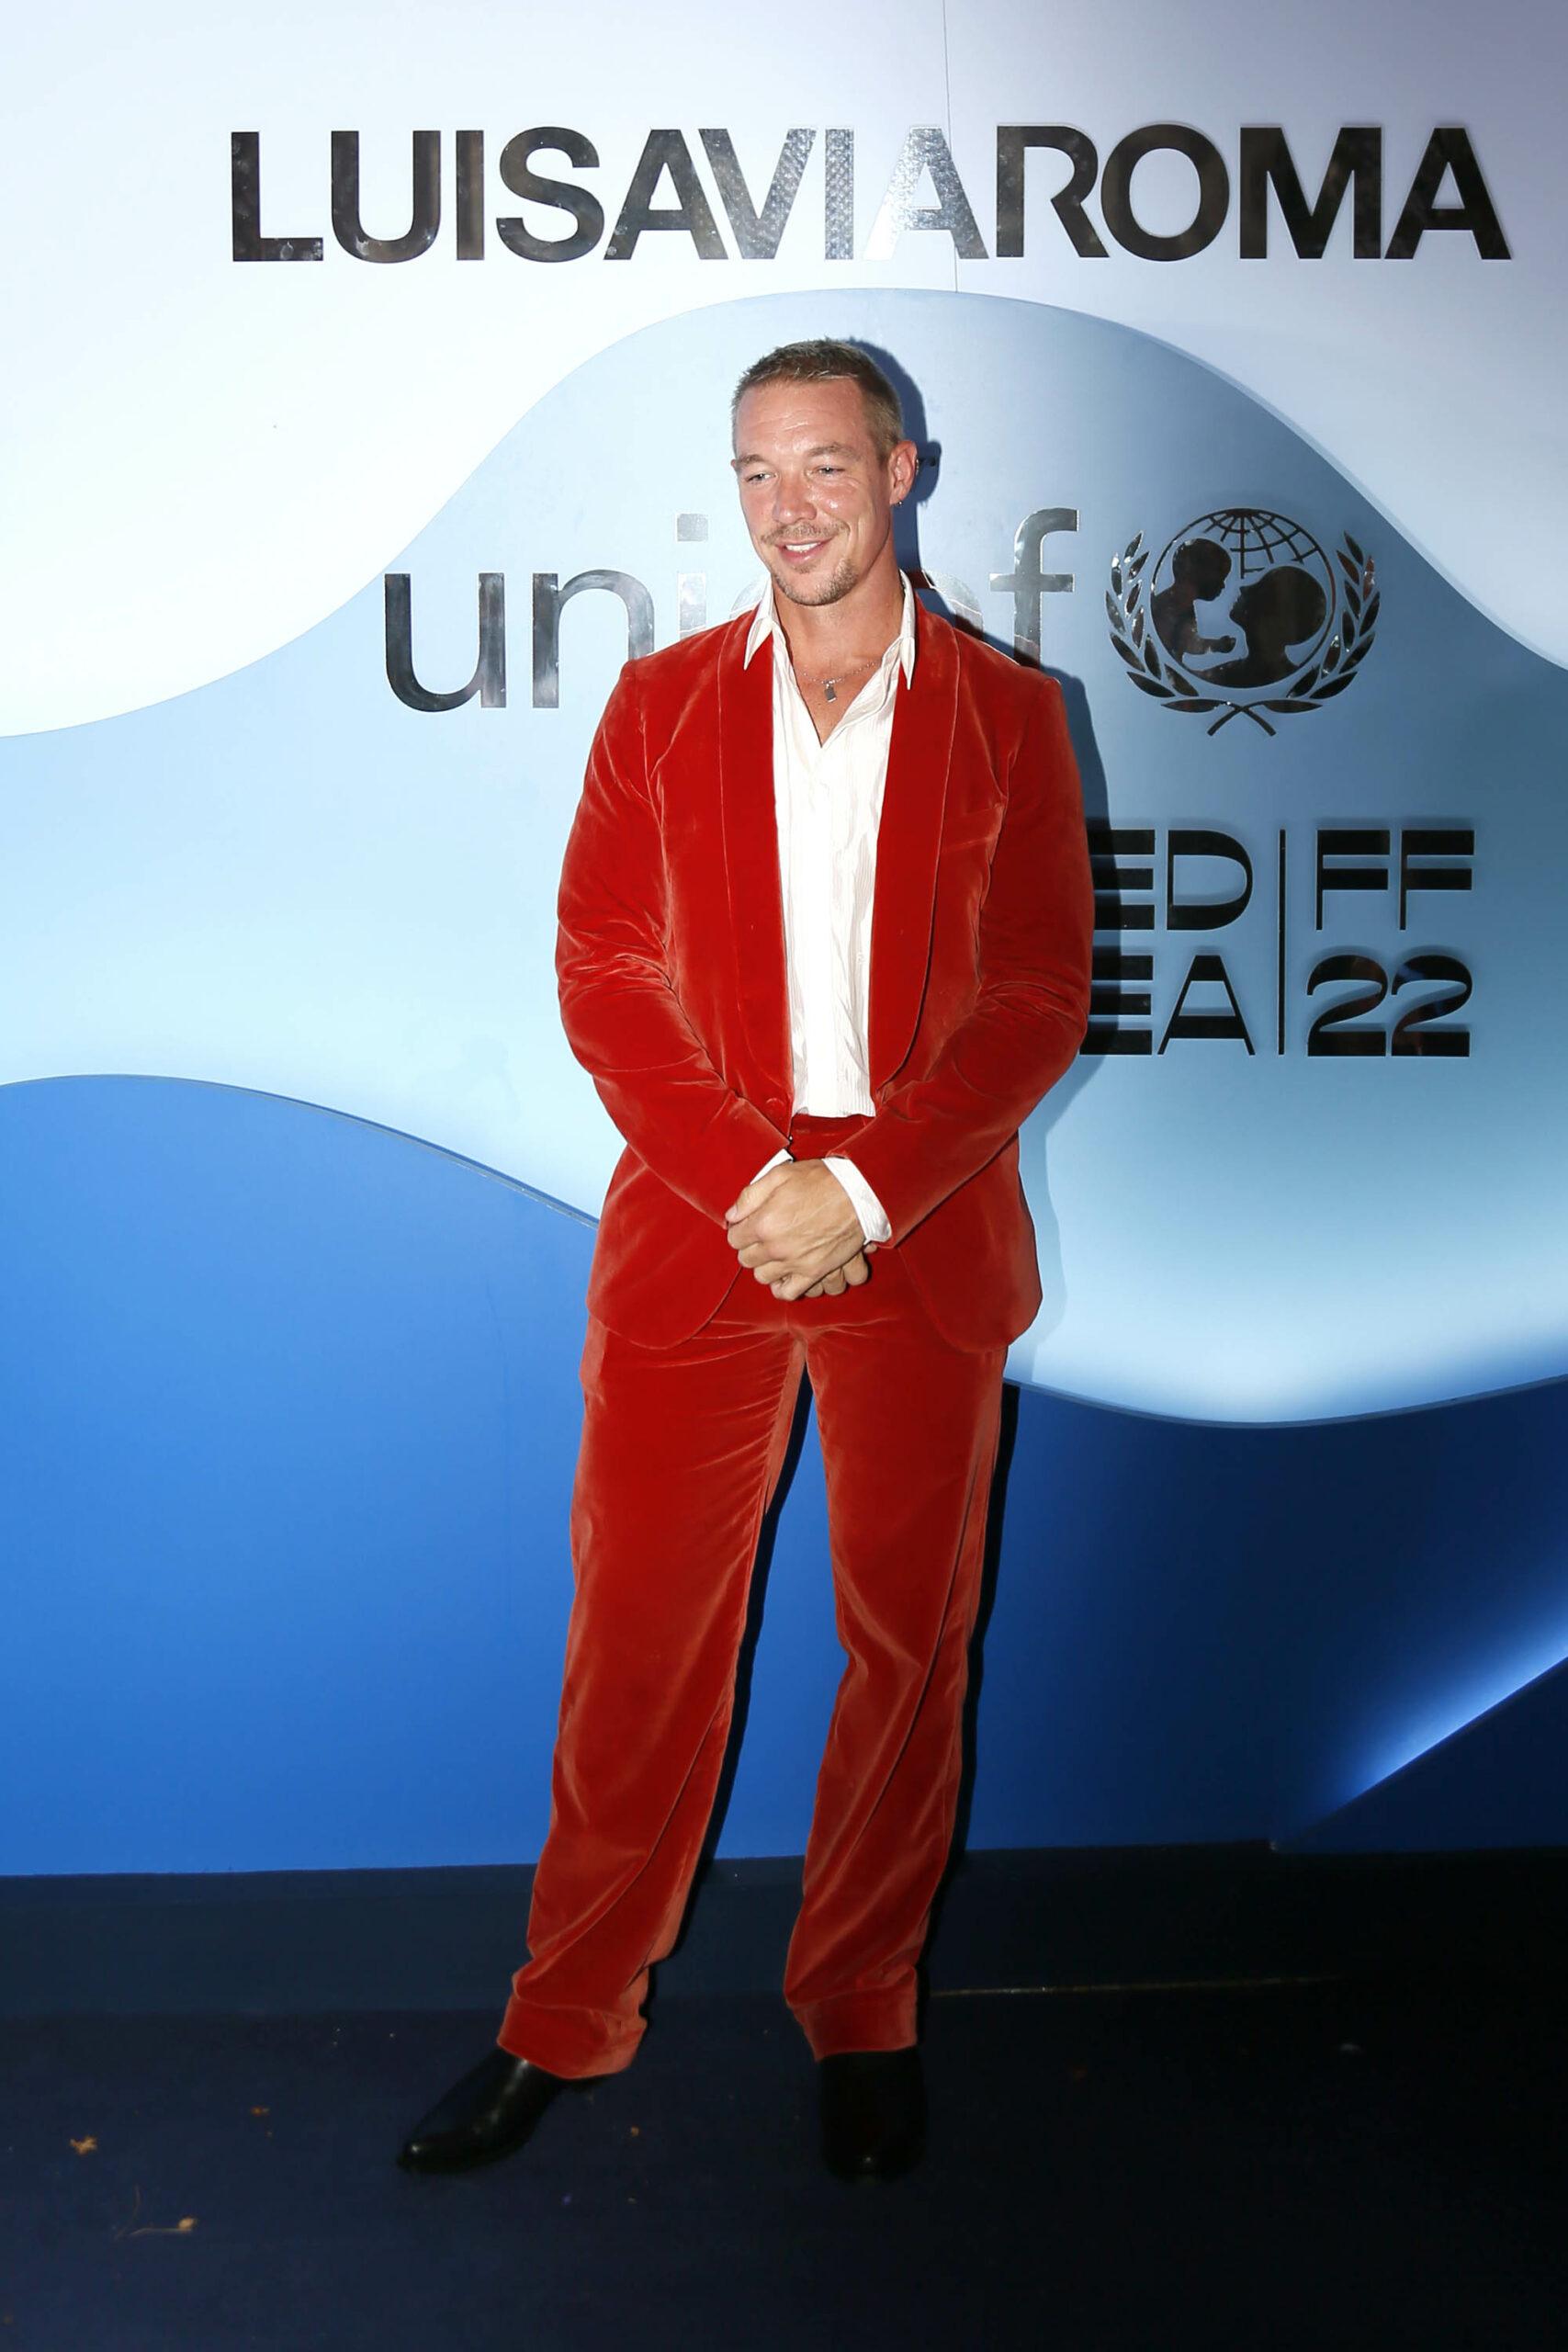 Celebrities on red carpet of LuisaViaRoma Unicef Gala in Capri